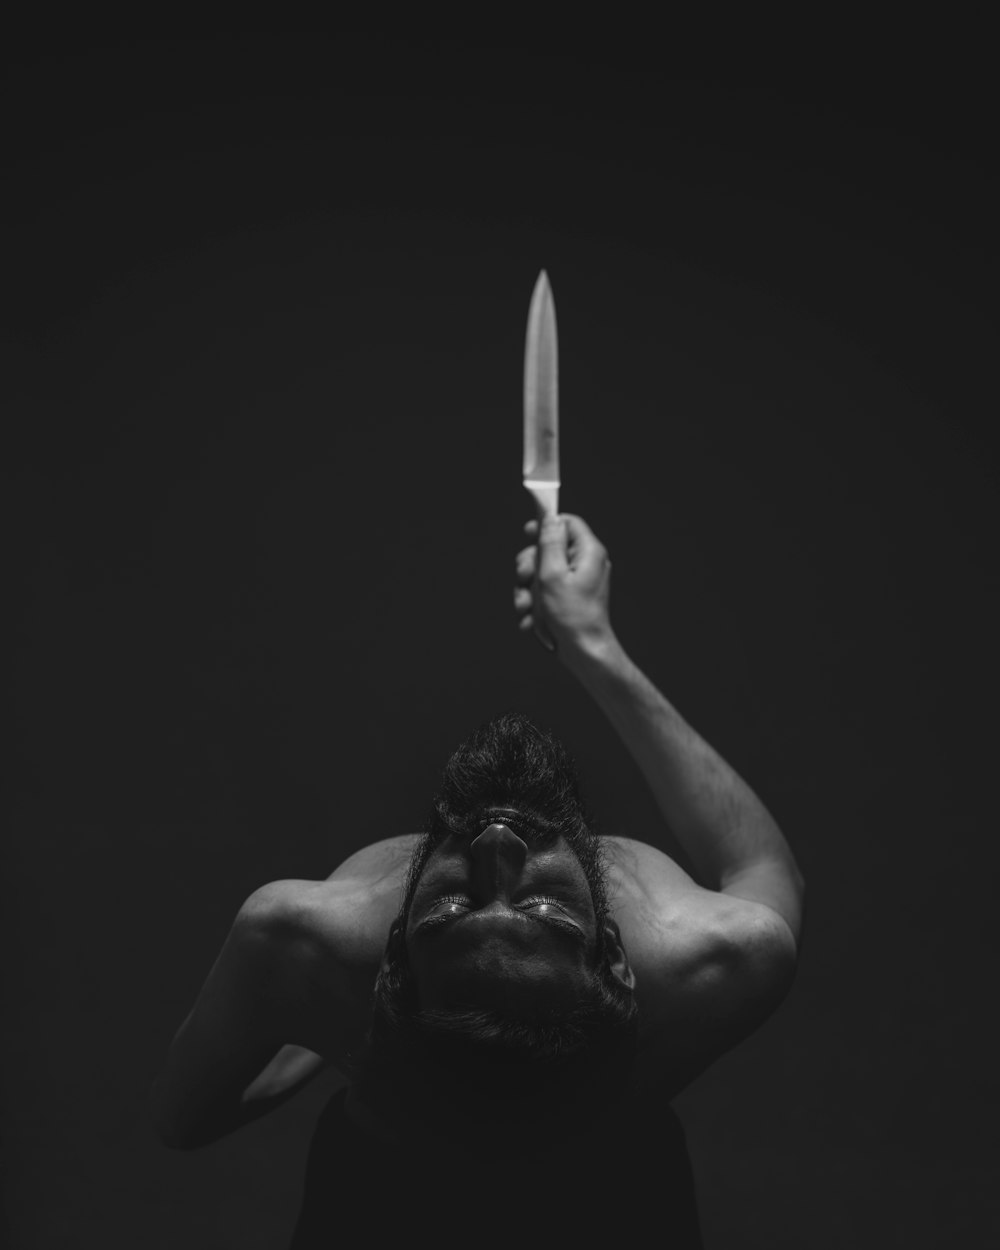 fotografia in scala di grigi dell'uomo che tiene il coltello